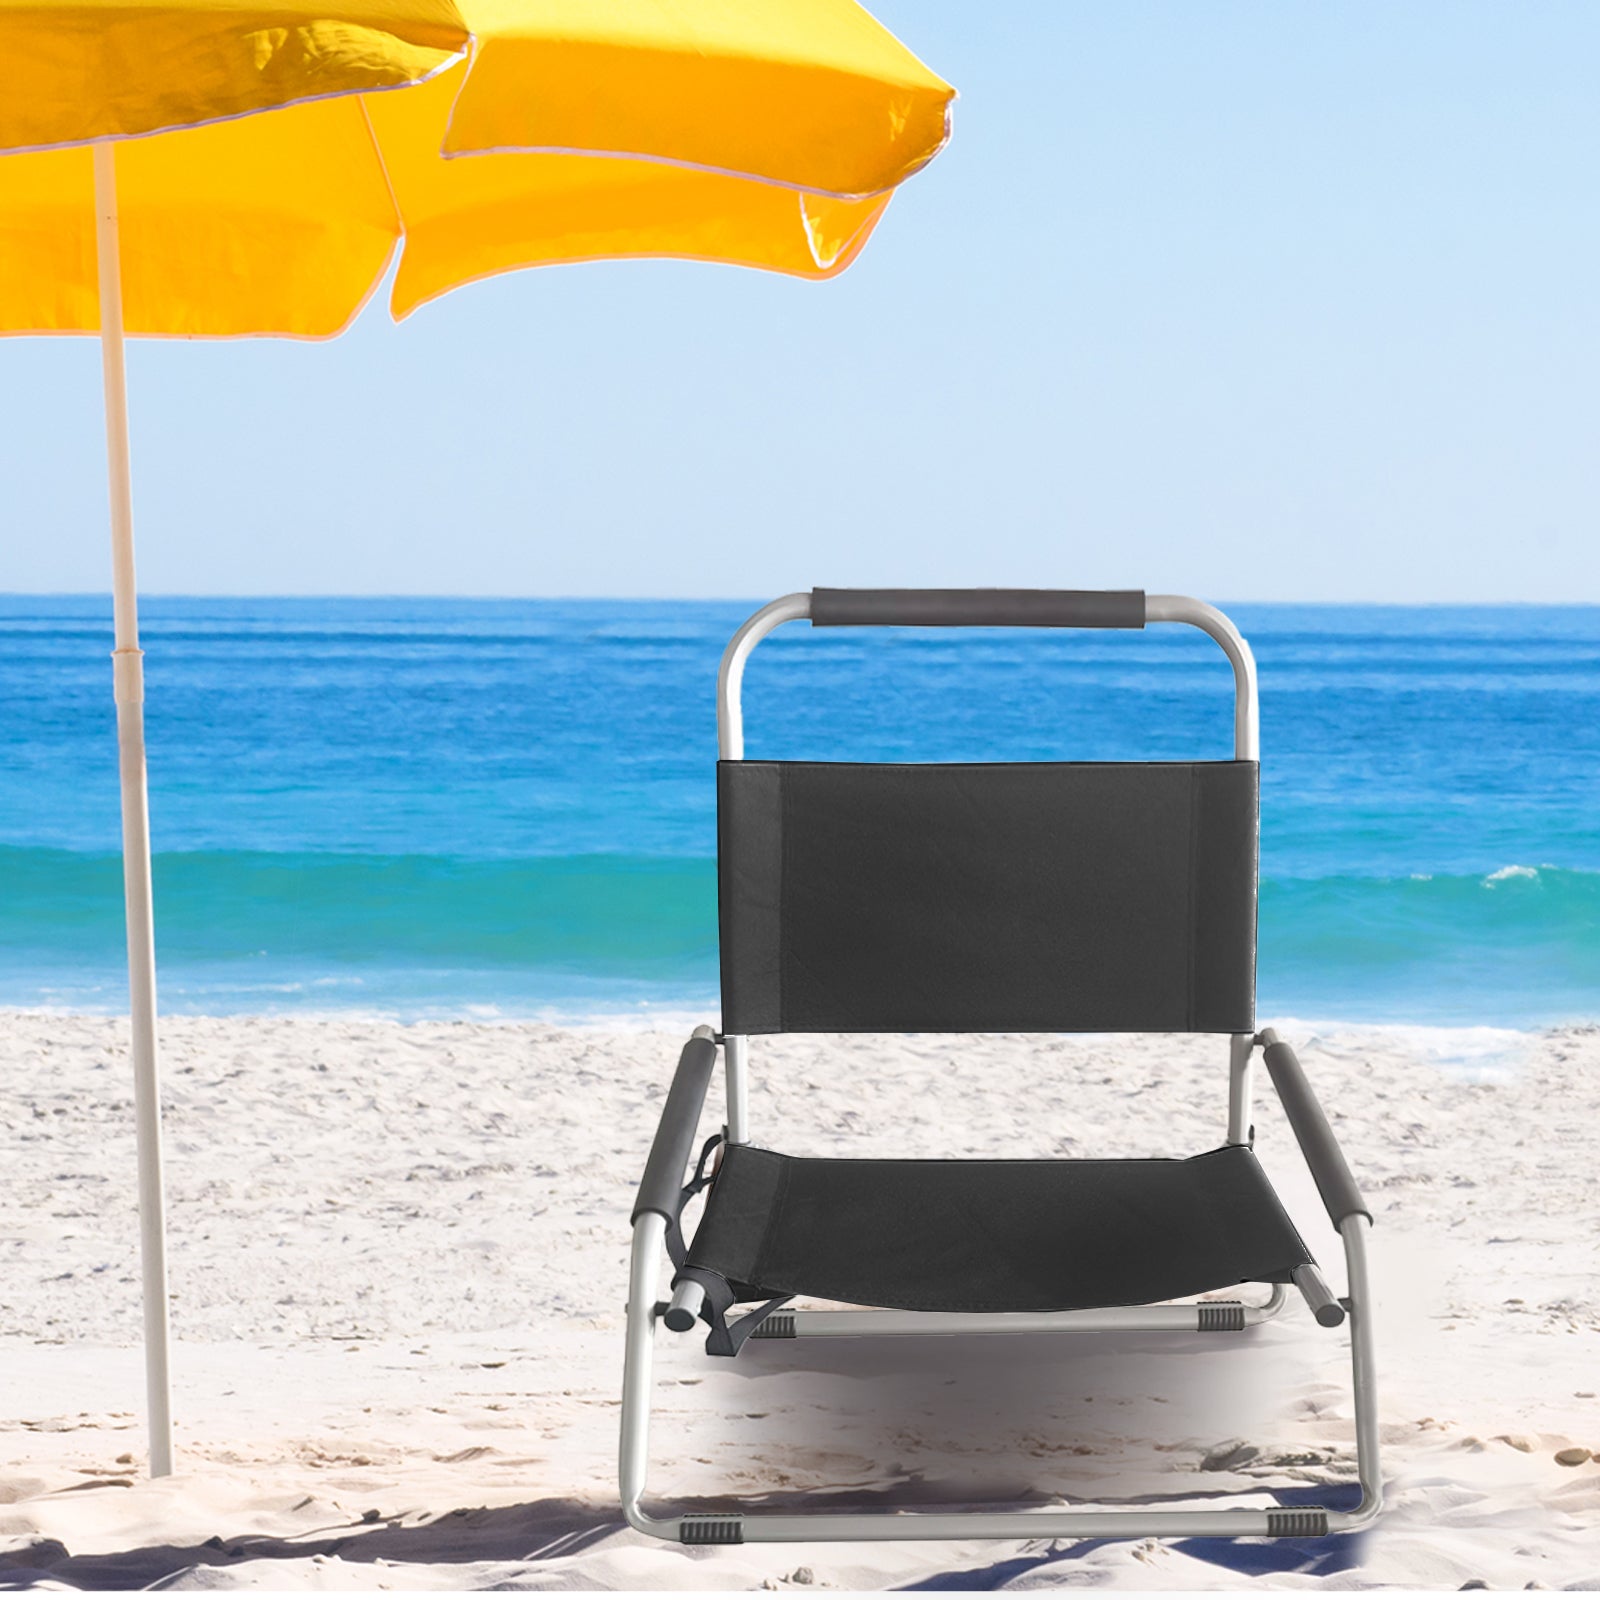 Havana Outdoors Beach Chair 2 Pack Folding Portable Summer Camping Outdoors - Black Deals499